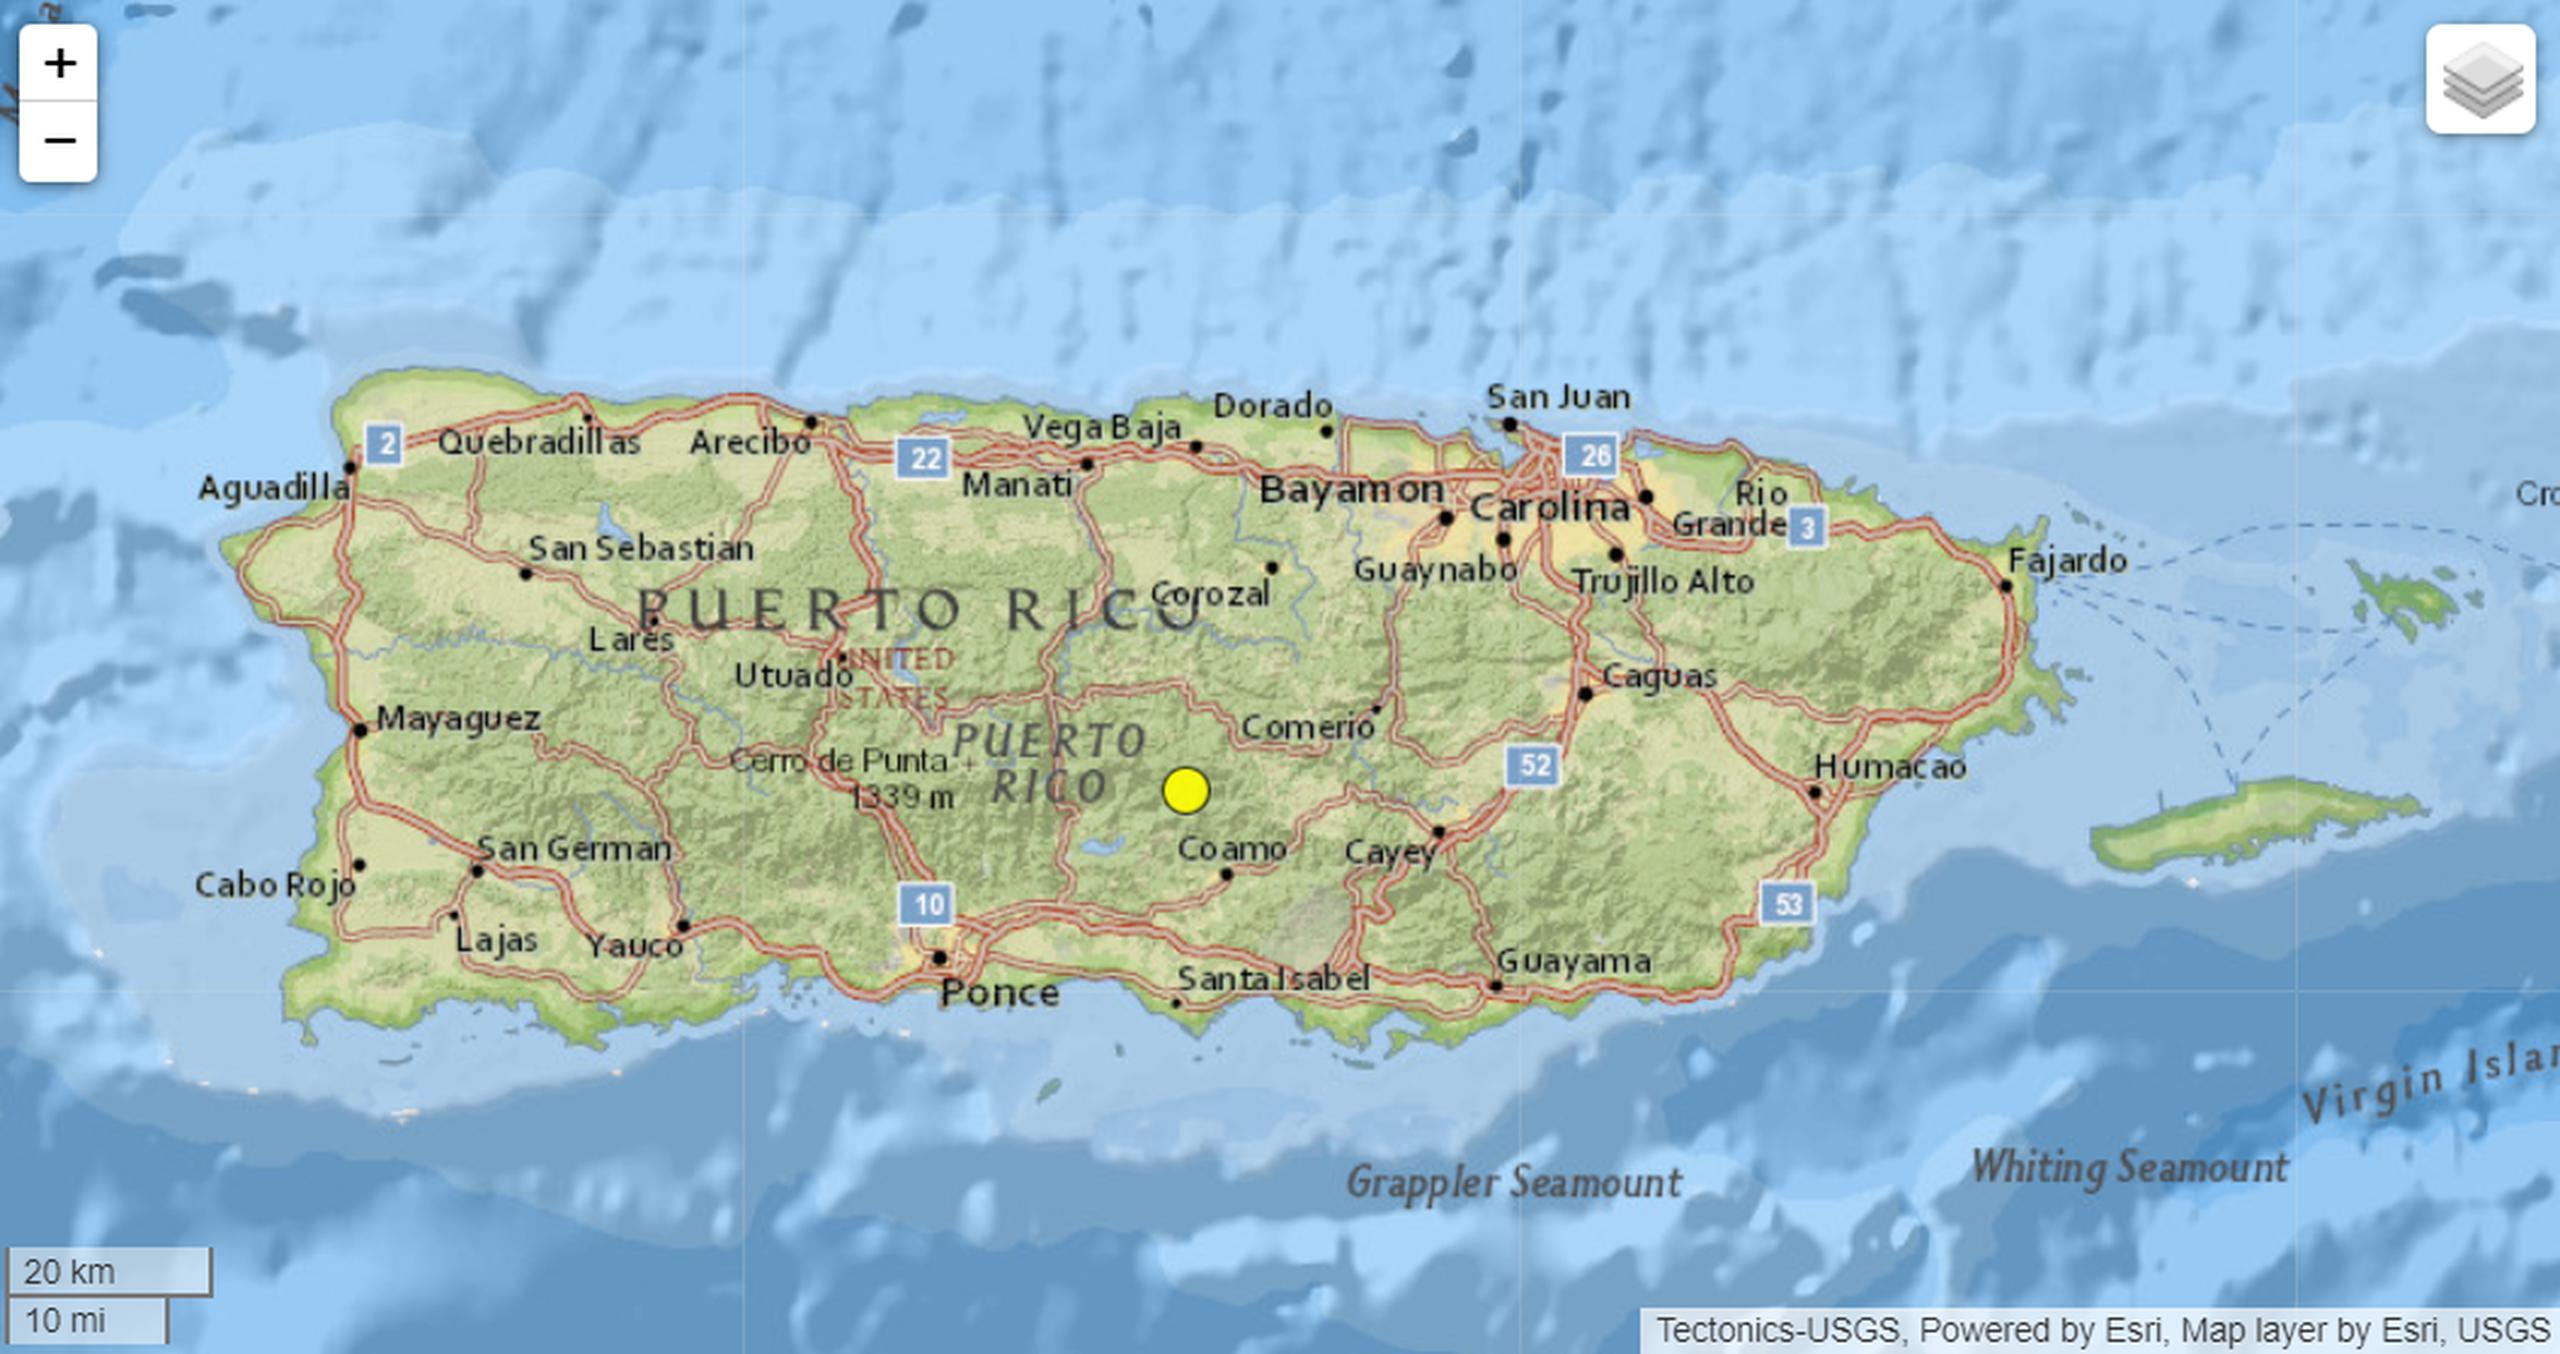 El círculo amarillo en el mapa muestra el lugar de origen del sismo de magnitud 3.33 grados reportado a las 3:57 de la mañana del 14 de julio de 2023.